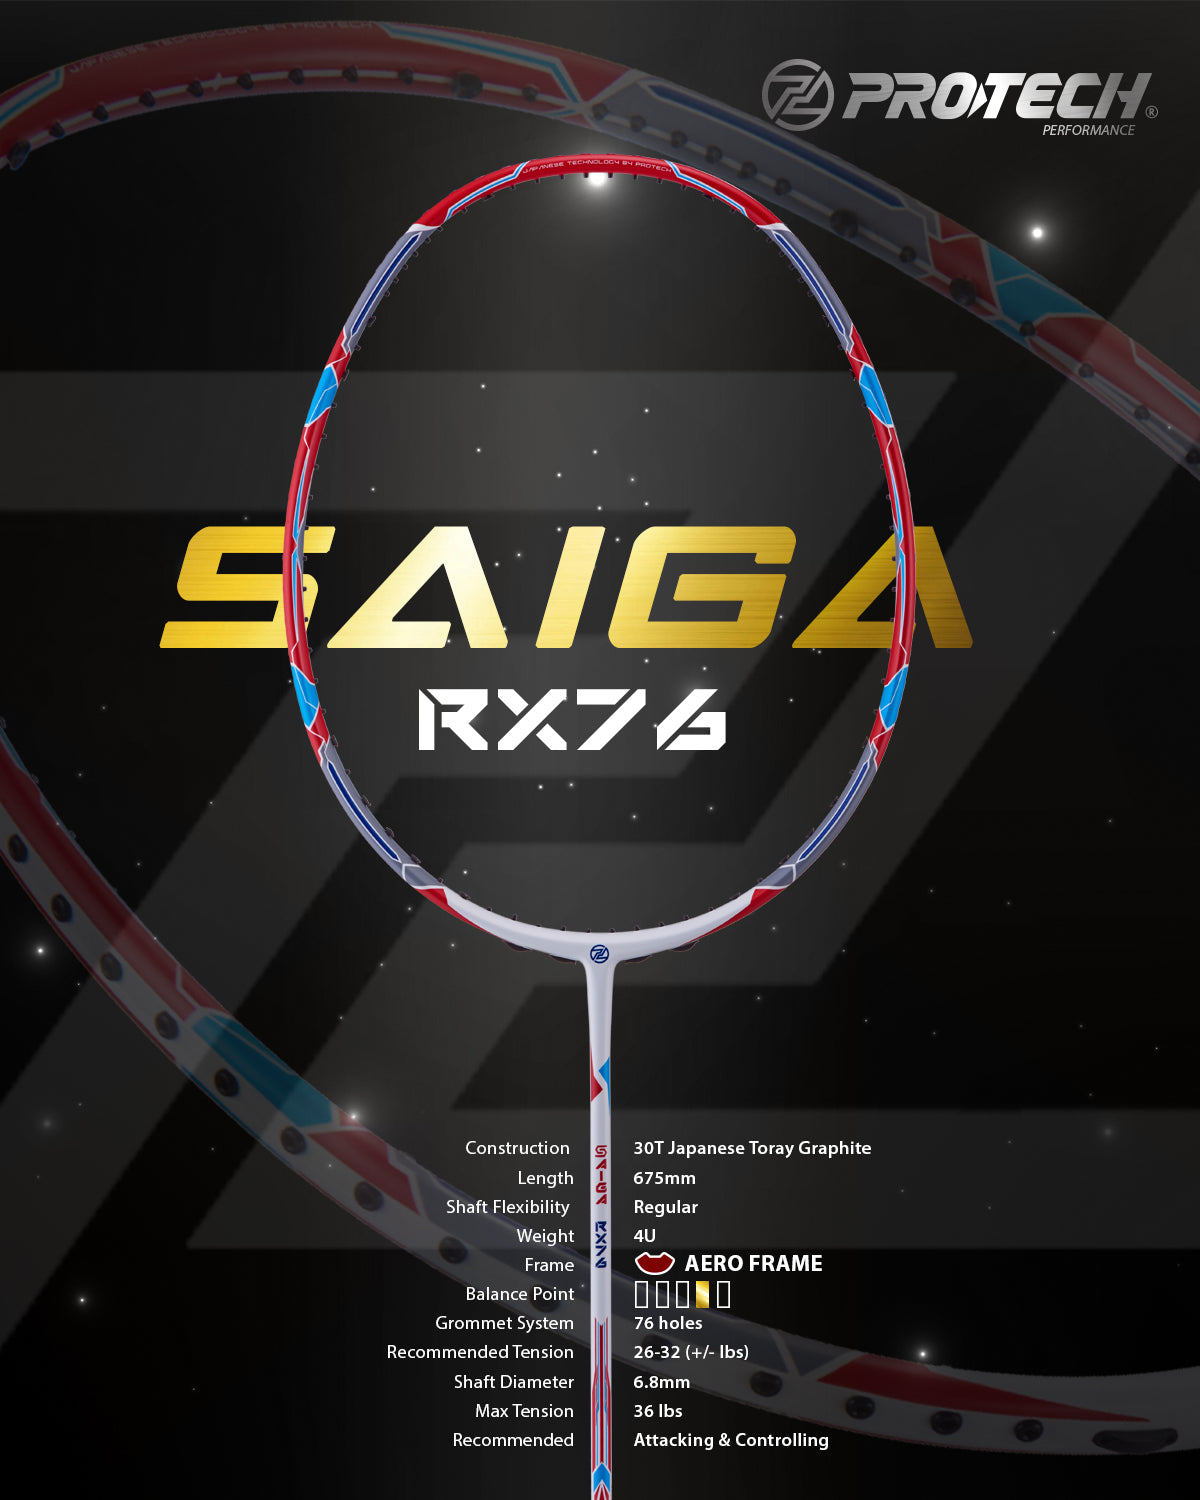 PROTECH BADMINTON SAIGA RX76 | 4UG2 | MAX 36 LBS